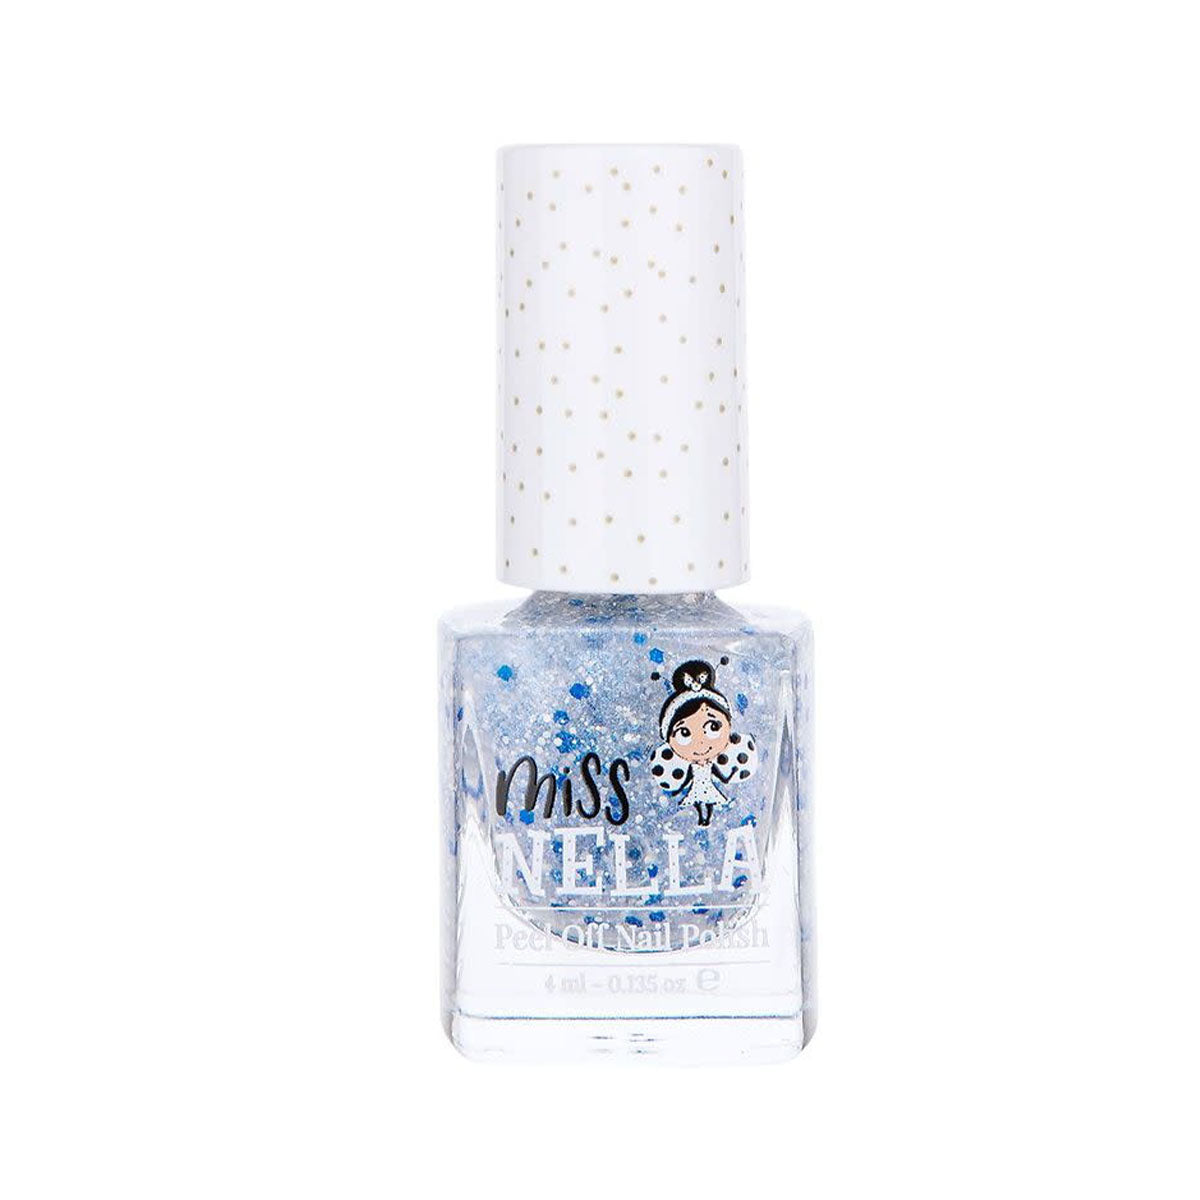 Laat de nageltjes van jouw kindje shinen met de nagellak midnight magic van het merk Miss Nella. De peel off nagellak is speciaal ontworpen voor kinderen en is vrij van chemicaliën. In verschillende kleuren. VanZus